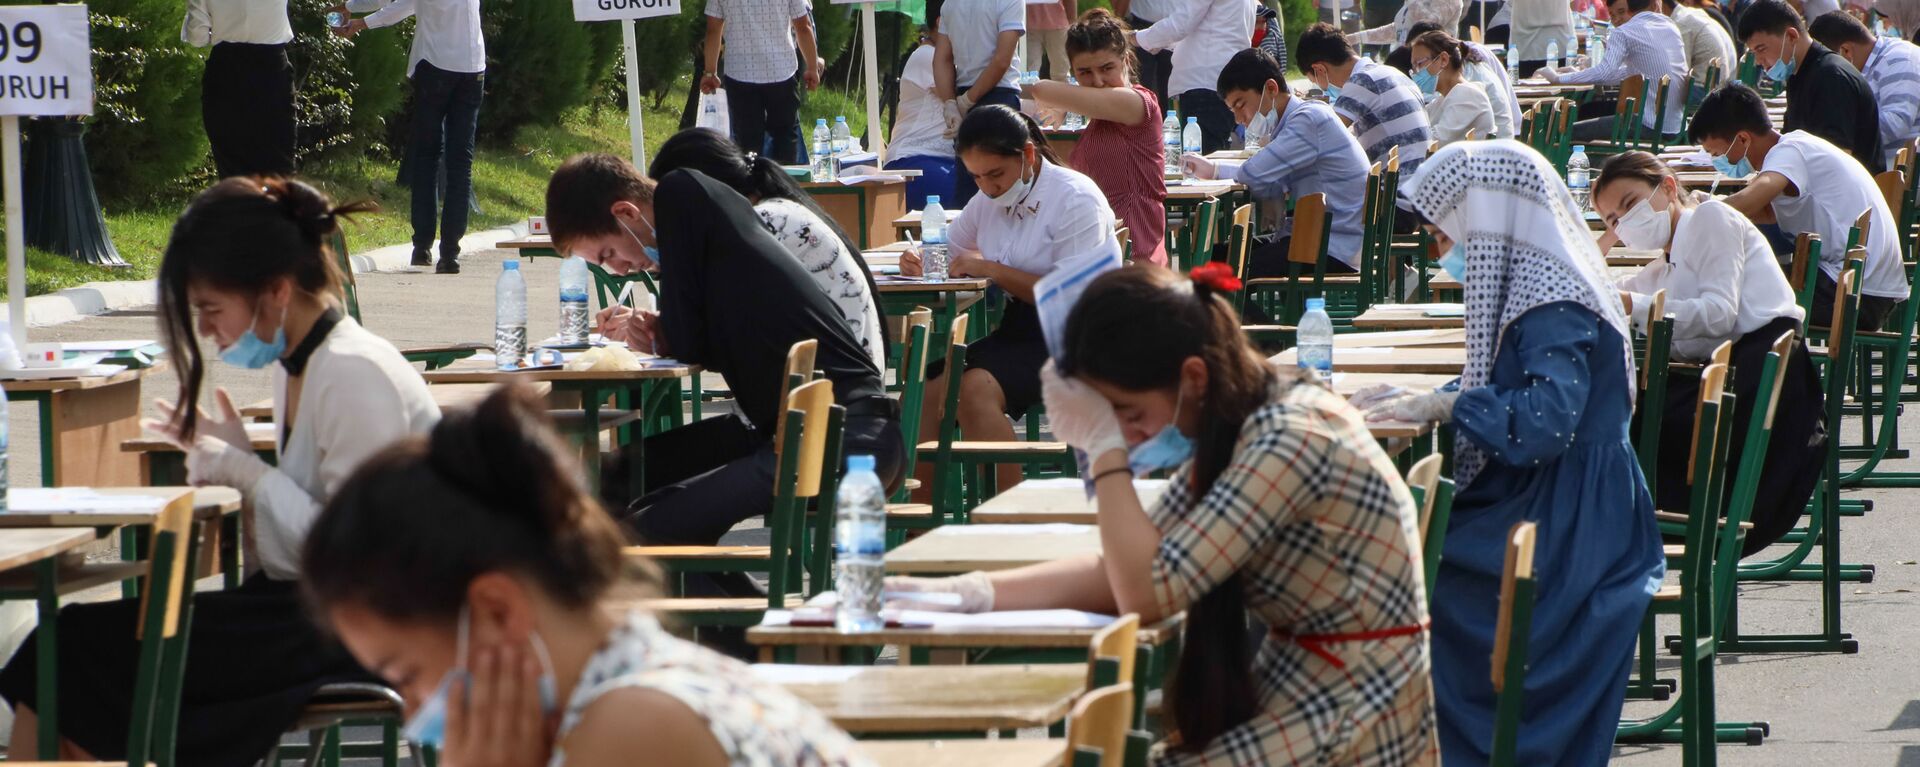 Узбекские студенты сдают вступительные экзамены под открытым небом в Ташкенте - Sputnik Узбекистан, 1920, 03.08.2021